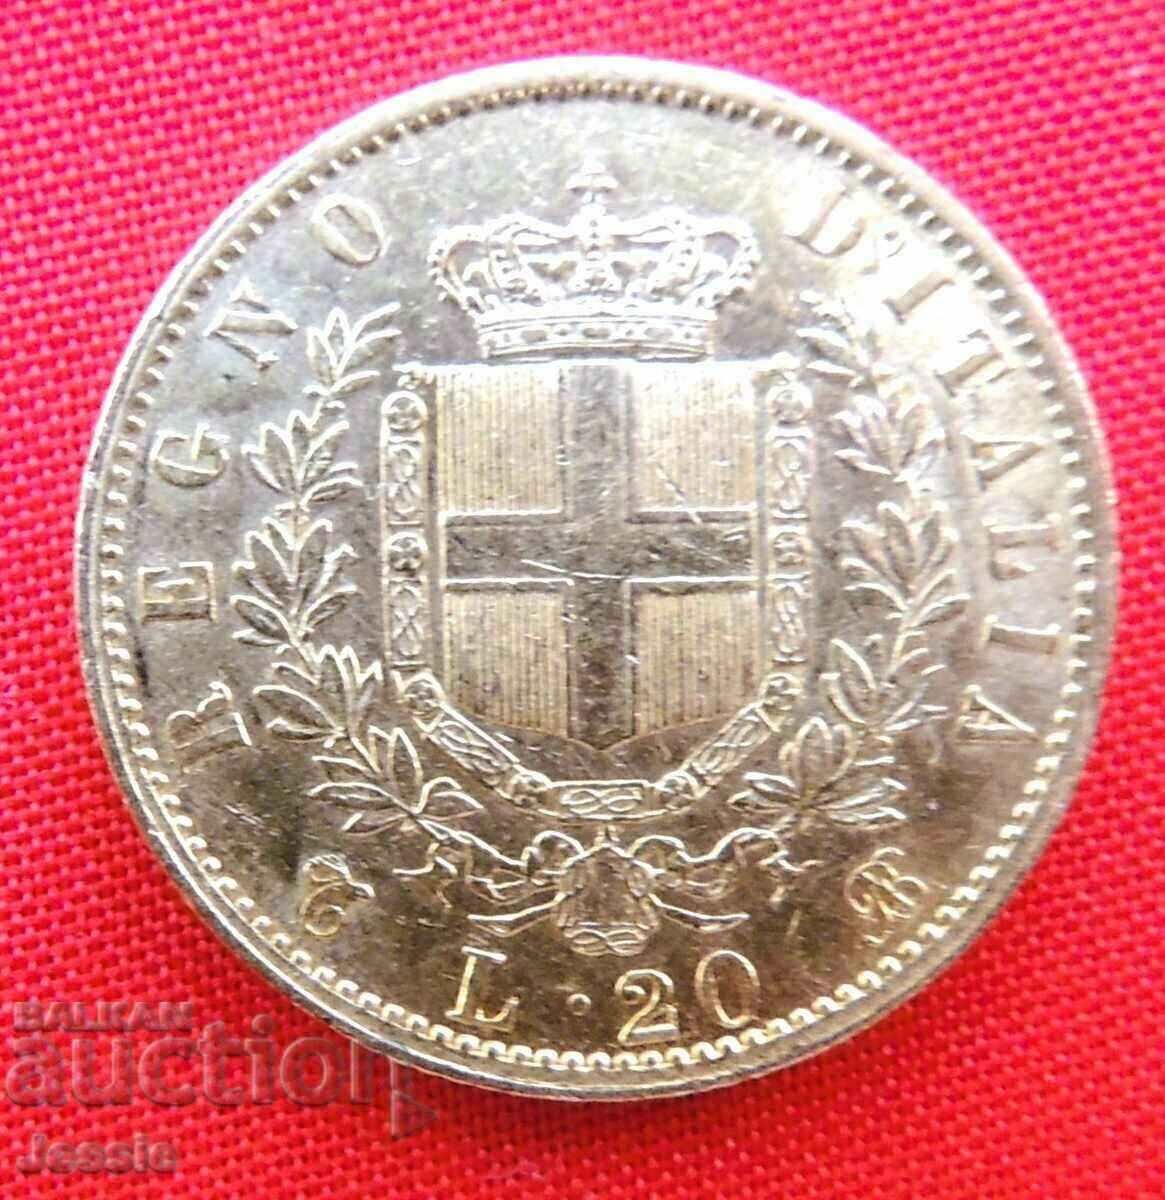 20 λιρέτες 1863 Ιταλία (20 λίρες Ιταλίας) (χρυσός)